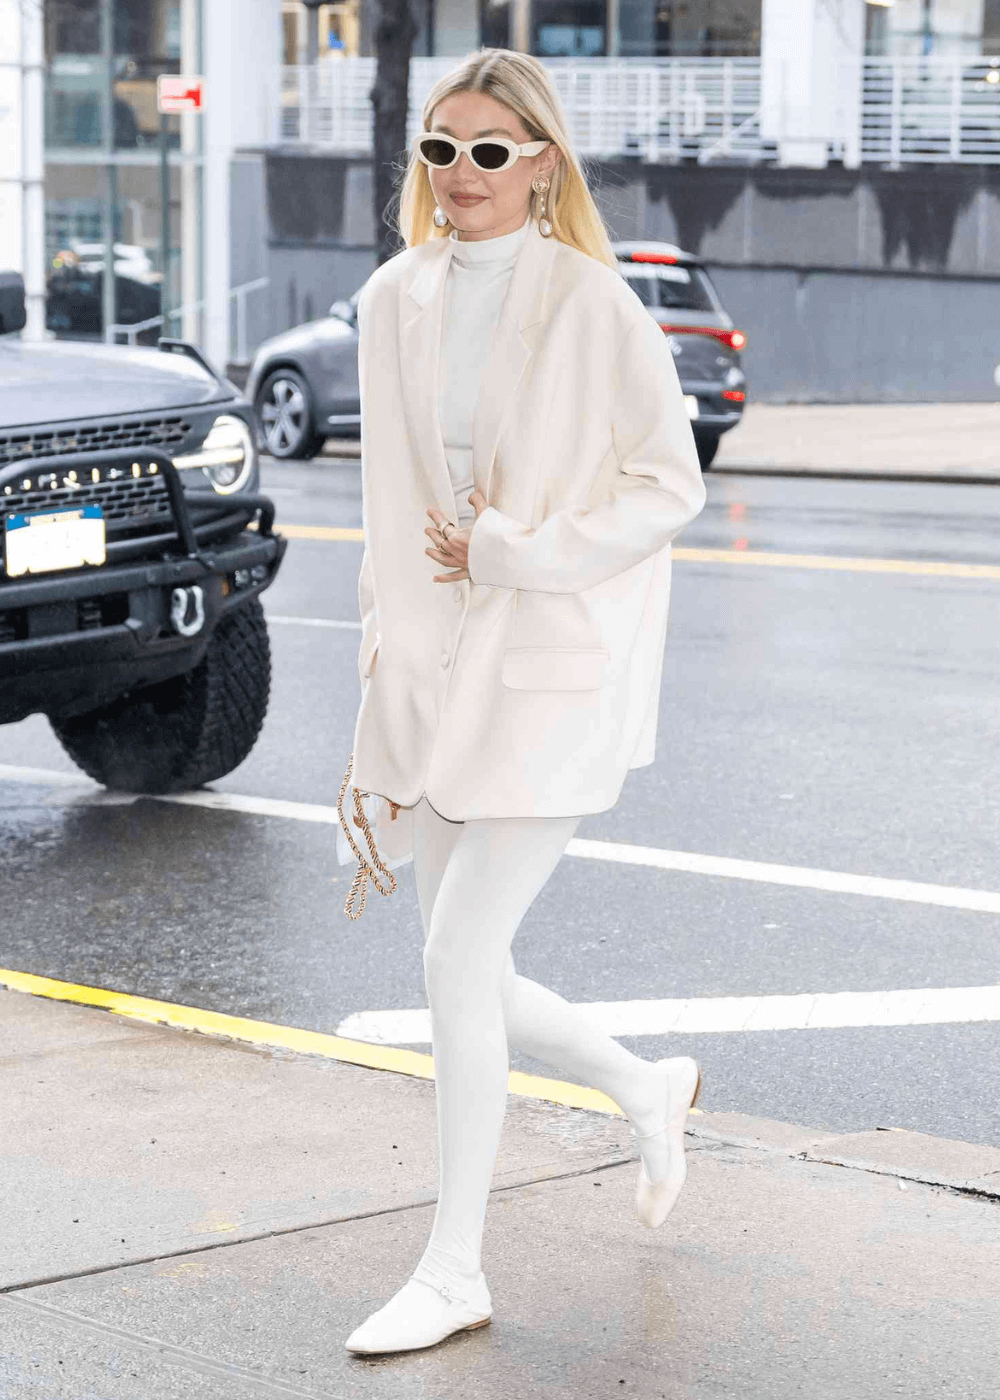 Gigi Hadid - look inteiro branco com blazer, meia-calça e sapatilha - meia-calça branca - inverno - mulher loira de óculos em pé na rua - https://stealthelook.com.br